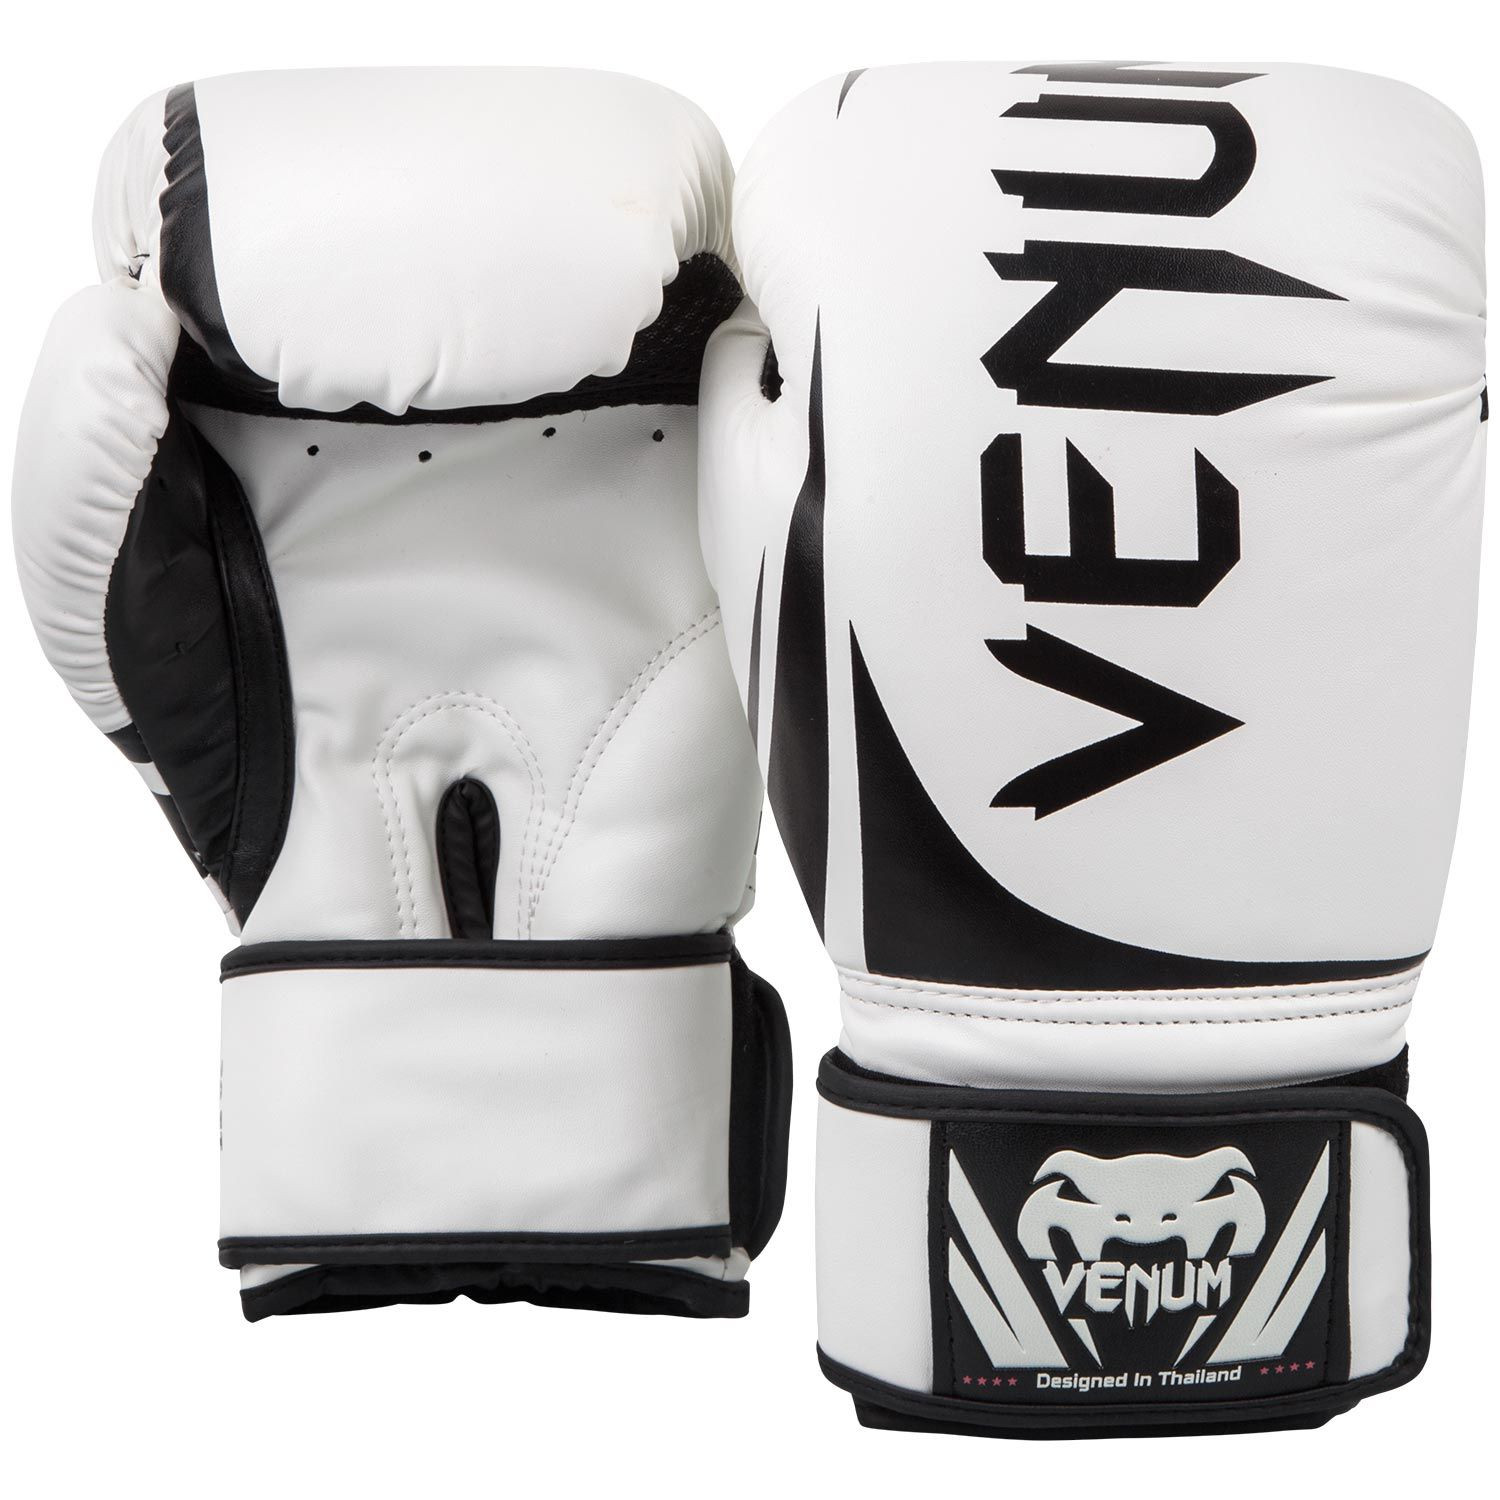 Mega Barato - 🛑 Adquiera los nuevos Guantes de Boxeo Venum 😎 ✓ Es  adecuado para uso regular y sesiones de entrenamiento pesado. ✓ Las  costuras del revestimiento se han reforzado para